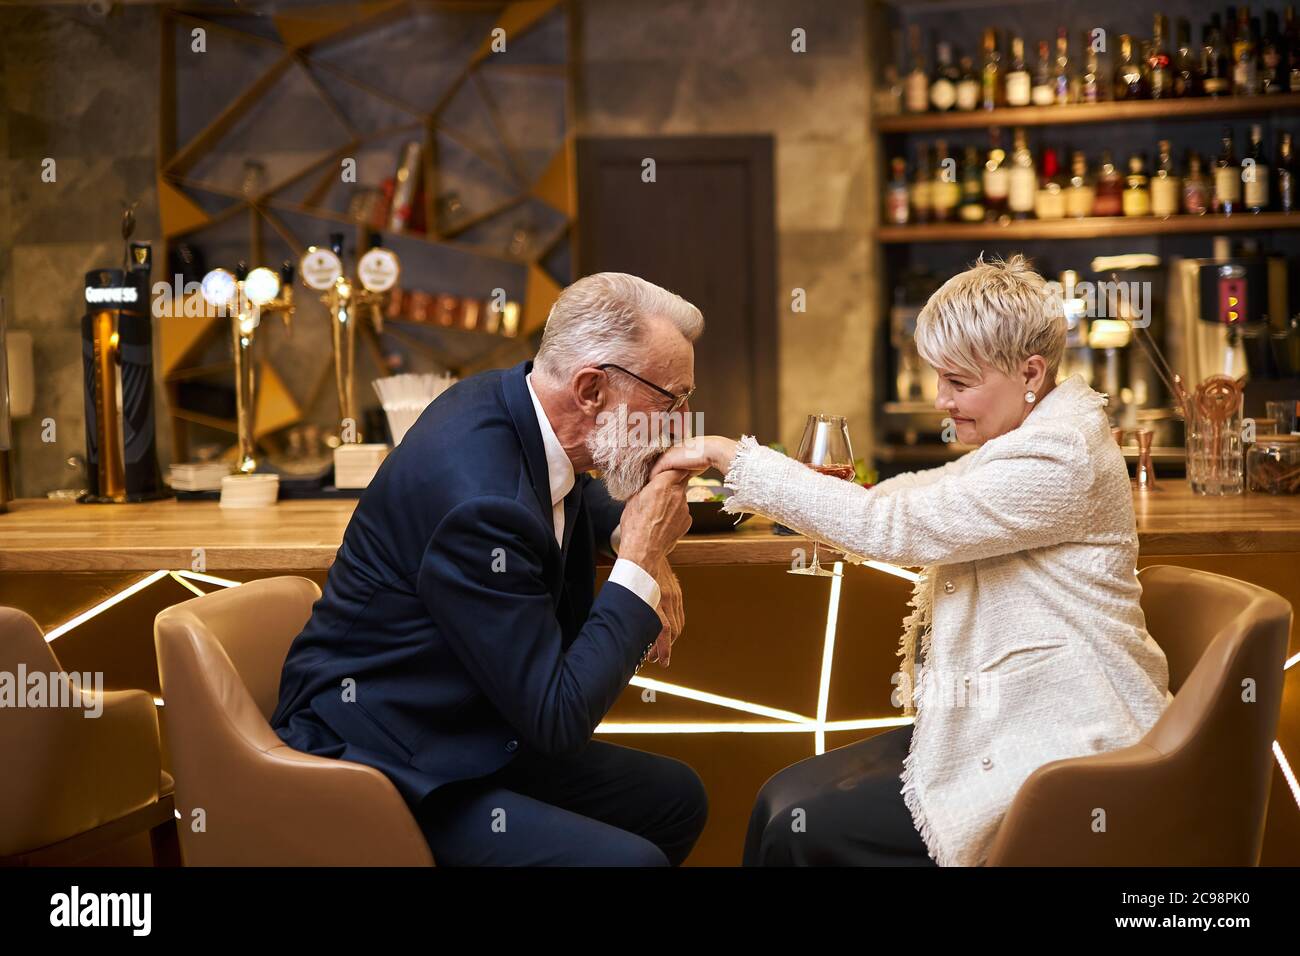 Schöner Mann in schönem Smoking und Frau in weißem Blazer sitzen in teuren schönen Restaurant. Männlich küssen Hand und seine Liebe zu erklären. Romantisches ima Stockfoto